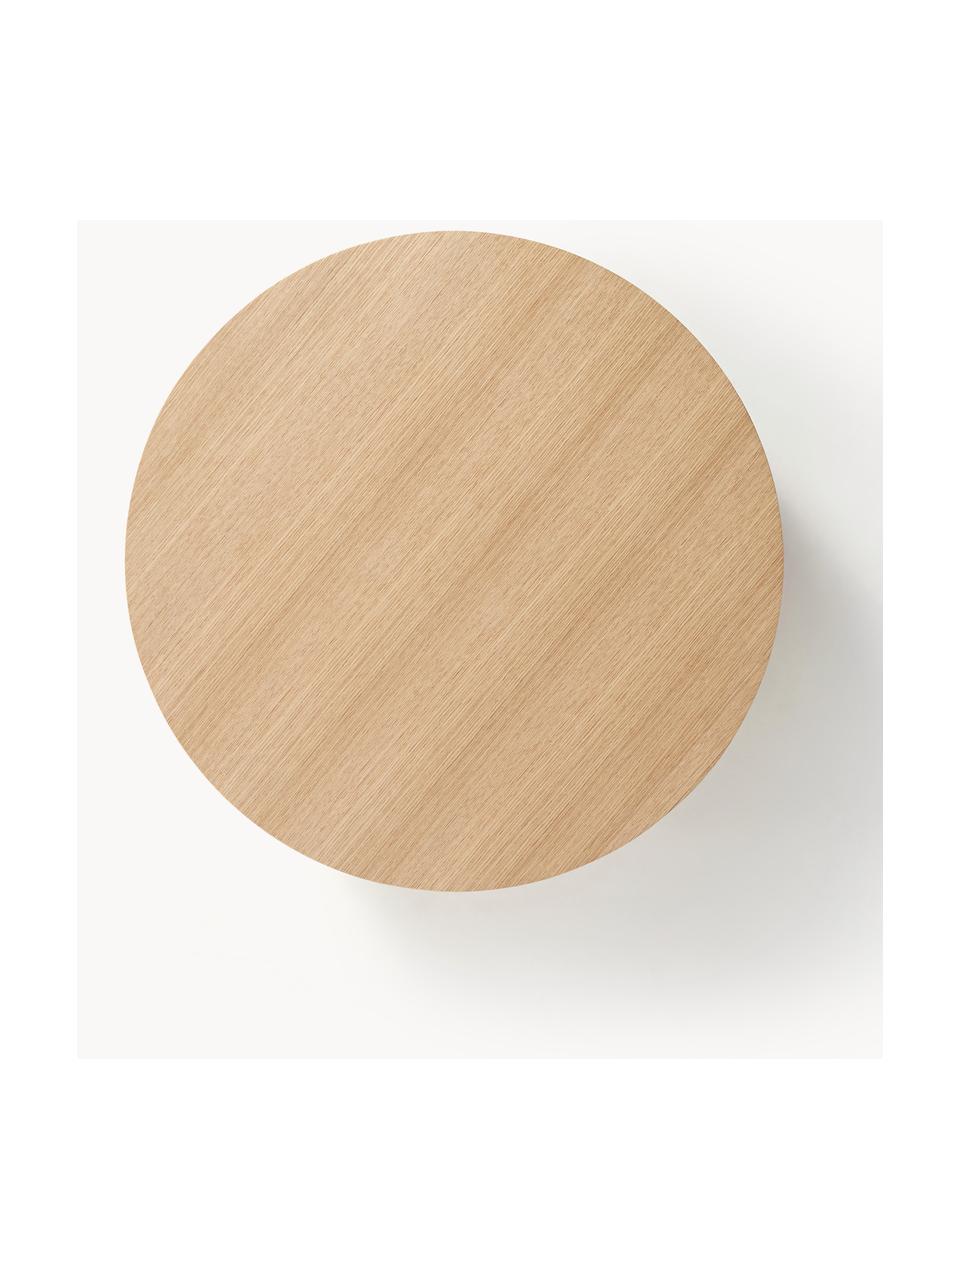 Kulatý dřevěný konferenční stolek Dan, MDF deska (dřevovláknitá deska střední hustoty) s dubovou dýhou, Světlé dřevo, Ø 80 cm, V 30 cm